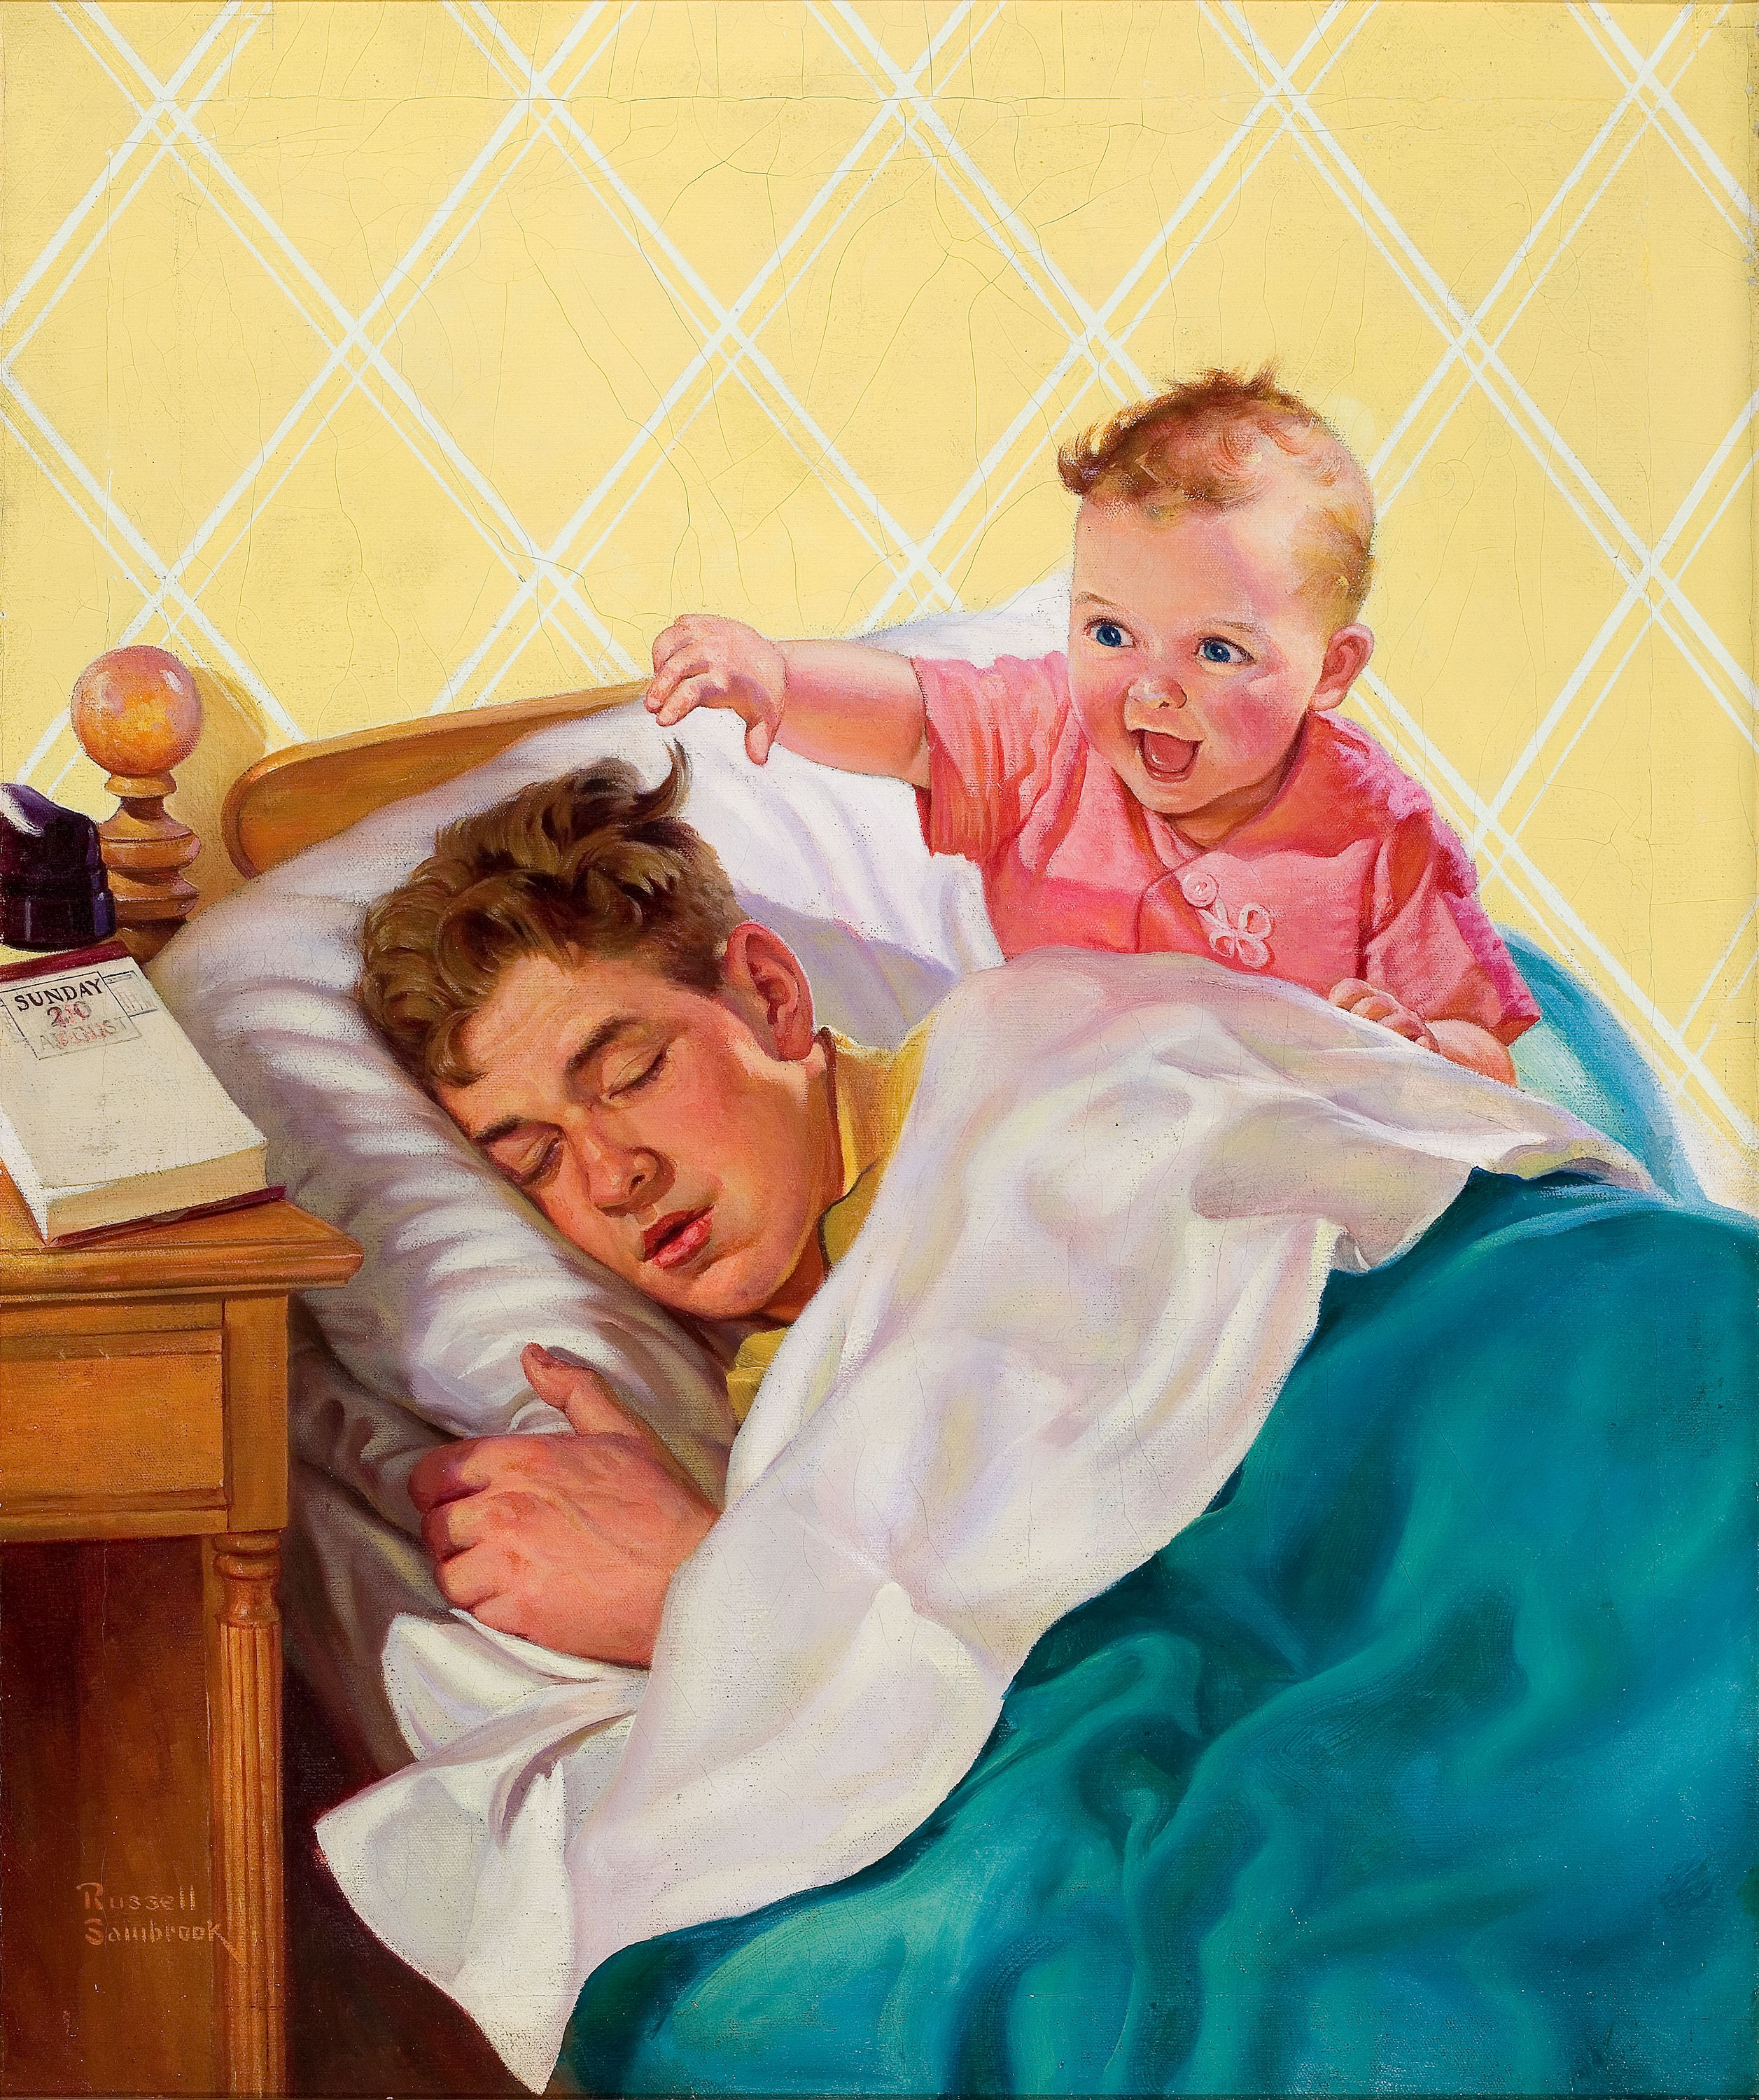 Проснулась а ее папа. Руссель Самбрук. Рассел Самбрук художник. Картина для папы. Отец в живописи.